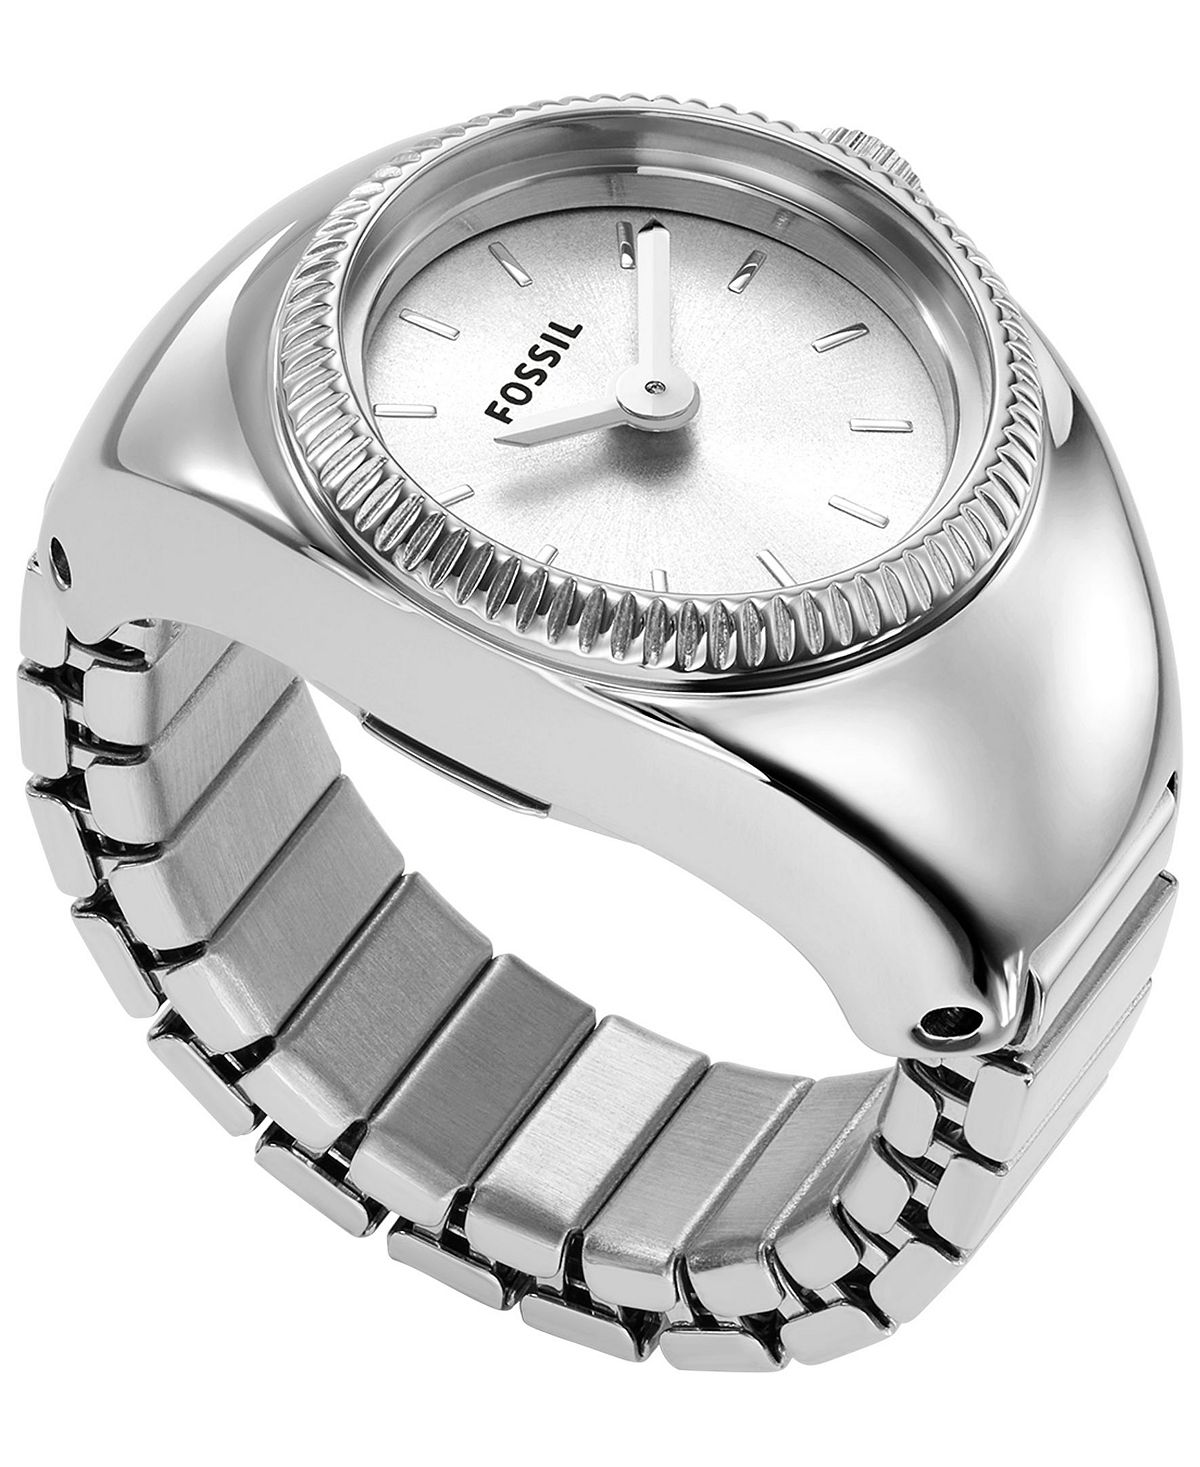 Женские часы-кольцо, двустрелочные часы-браслет из нержавеющей стали серебристого цвета, 15 мм Fossil женские часы olympia серебристого цвета из нержавеющей стали 38 мм jbw